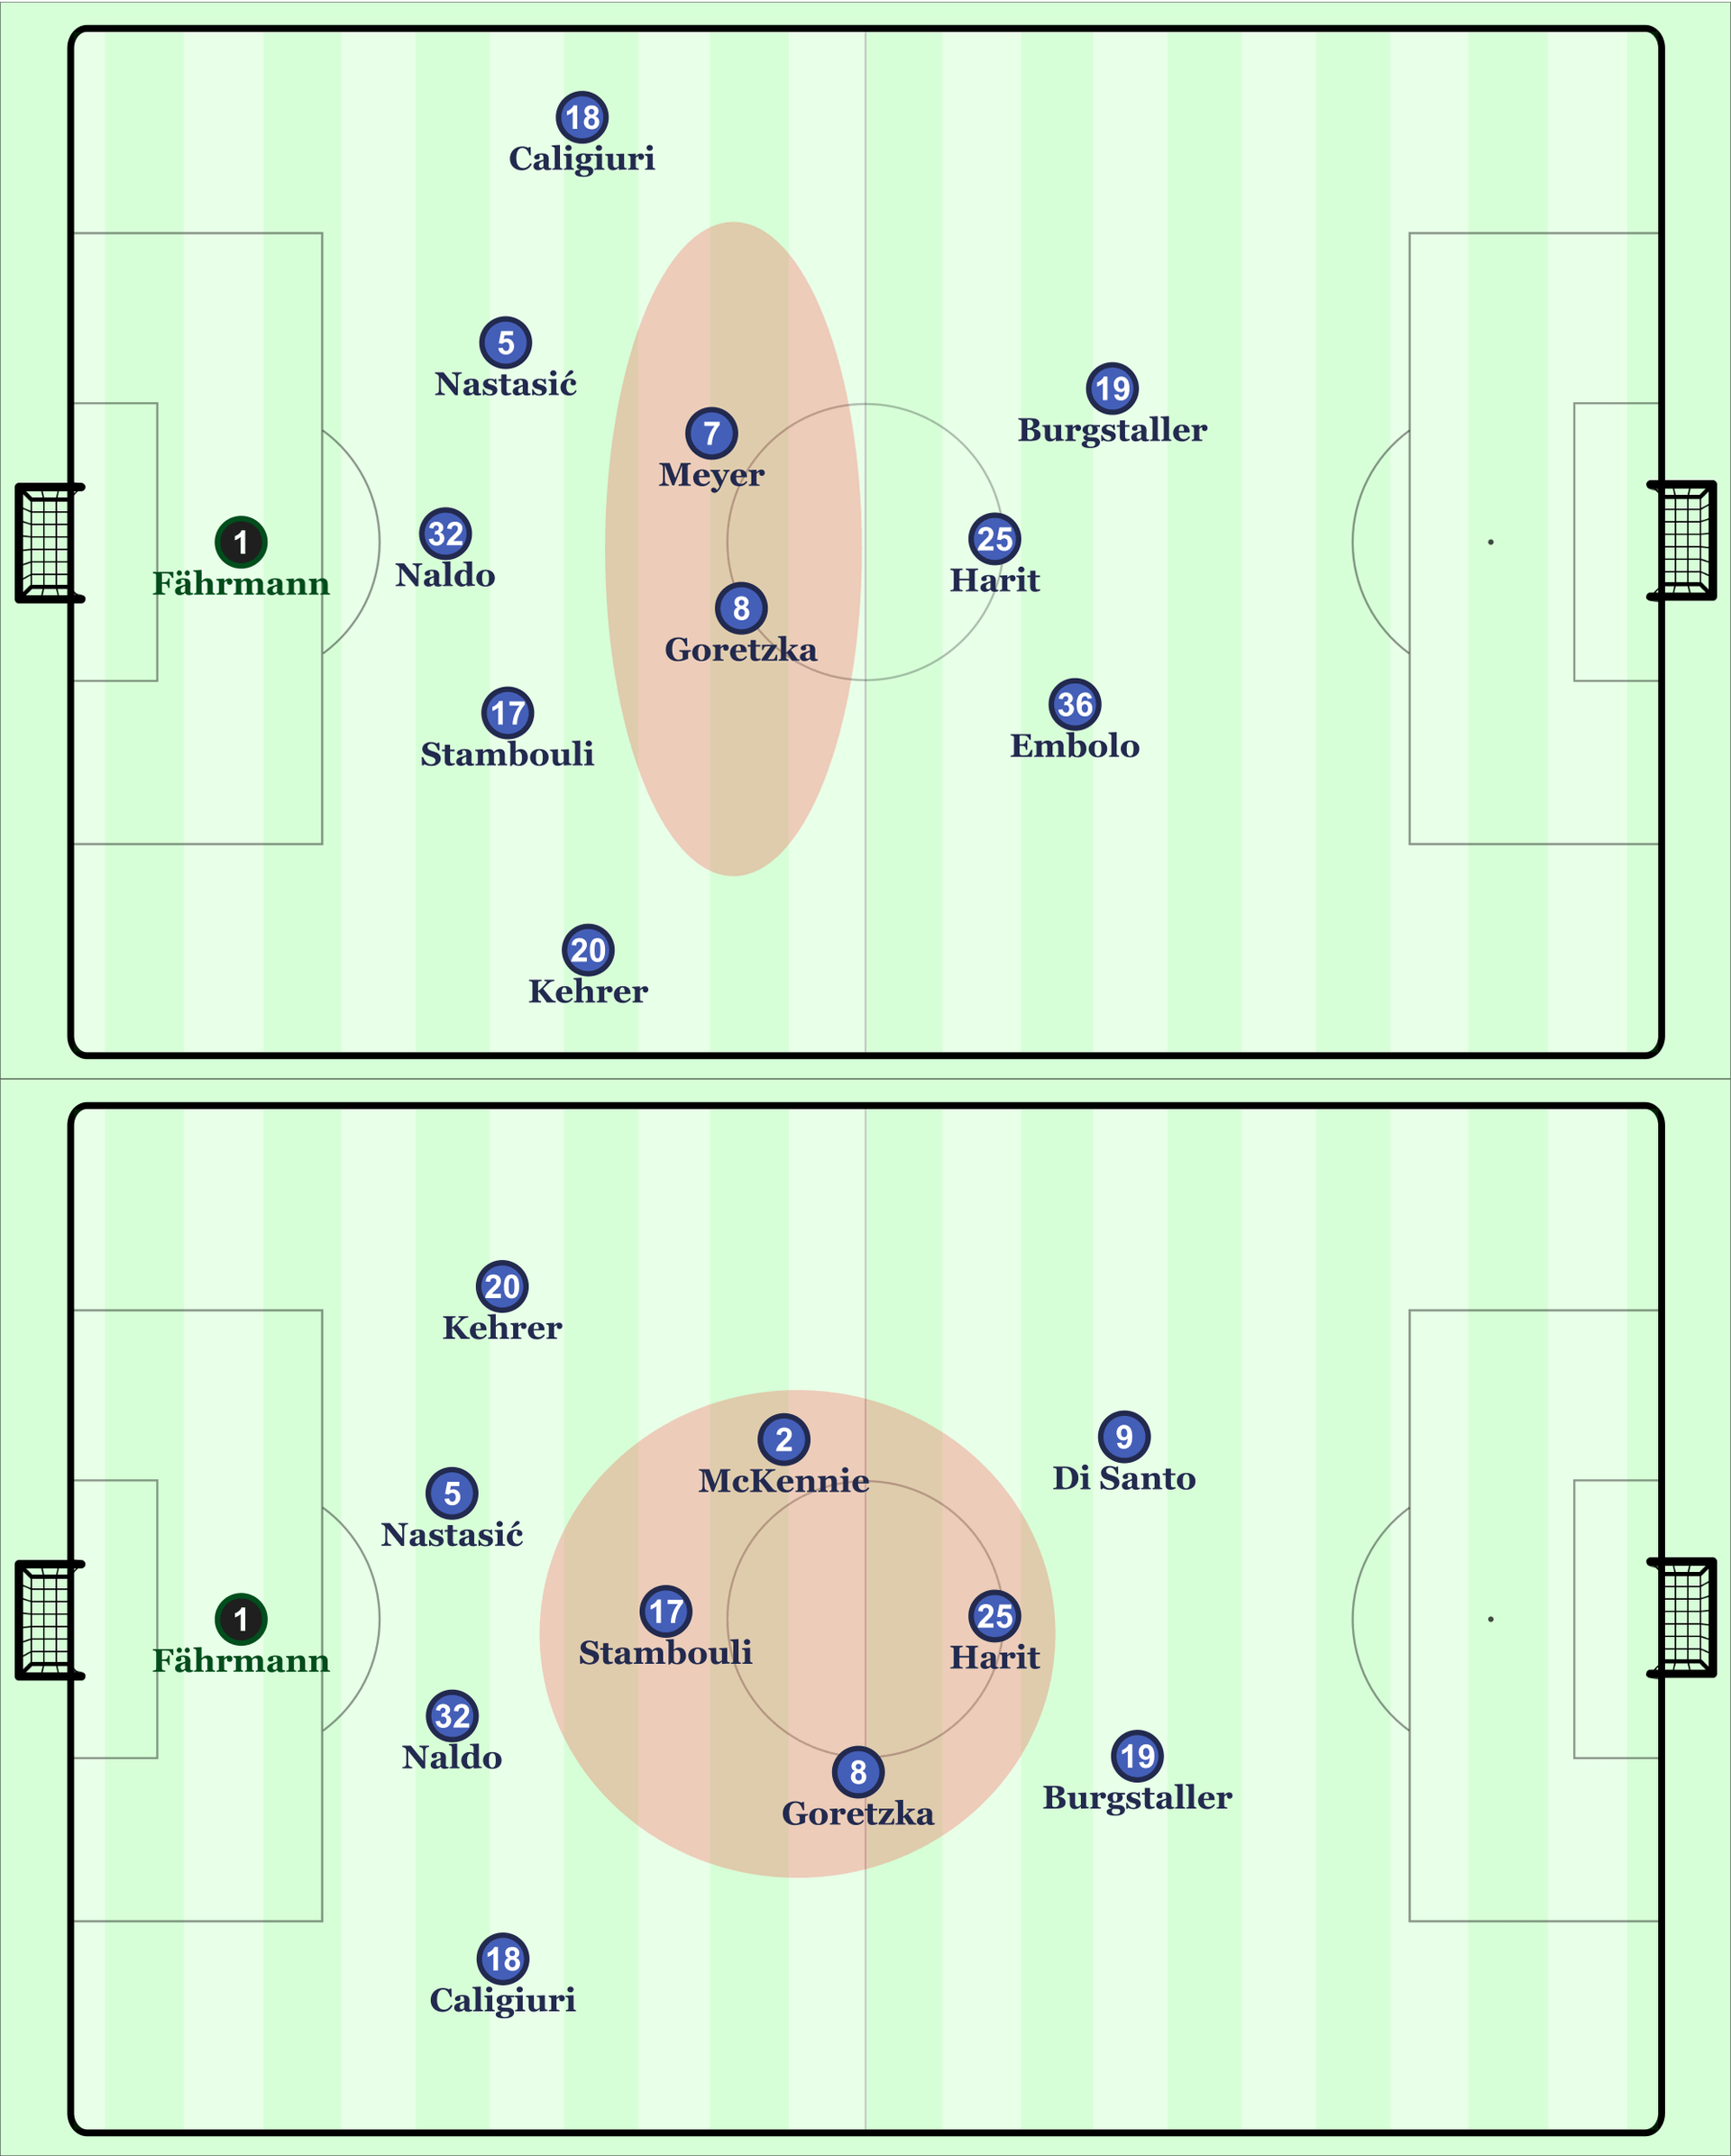 Die Schalker Grundformationen vor und nach der Halbzeitpause in Hamburg. Zunächst mussten Goretzka und Meyer viel Raum vor der Abwehrlinie bearbeiten. Anschließend hatte Schalker mehr Präsenz im Zentrum und den Halbräumen.